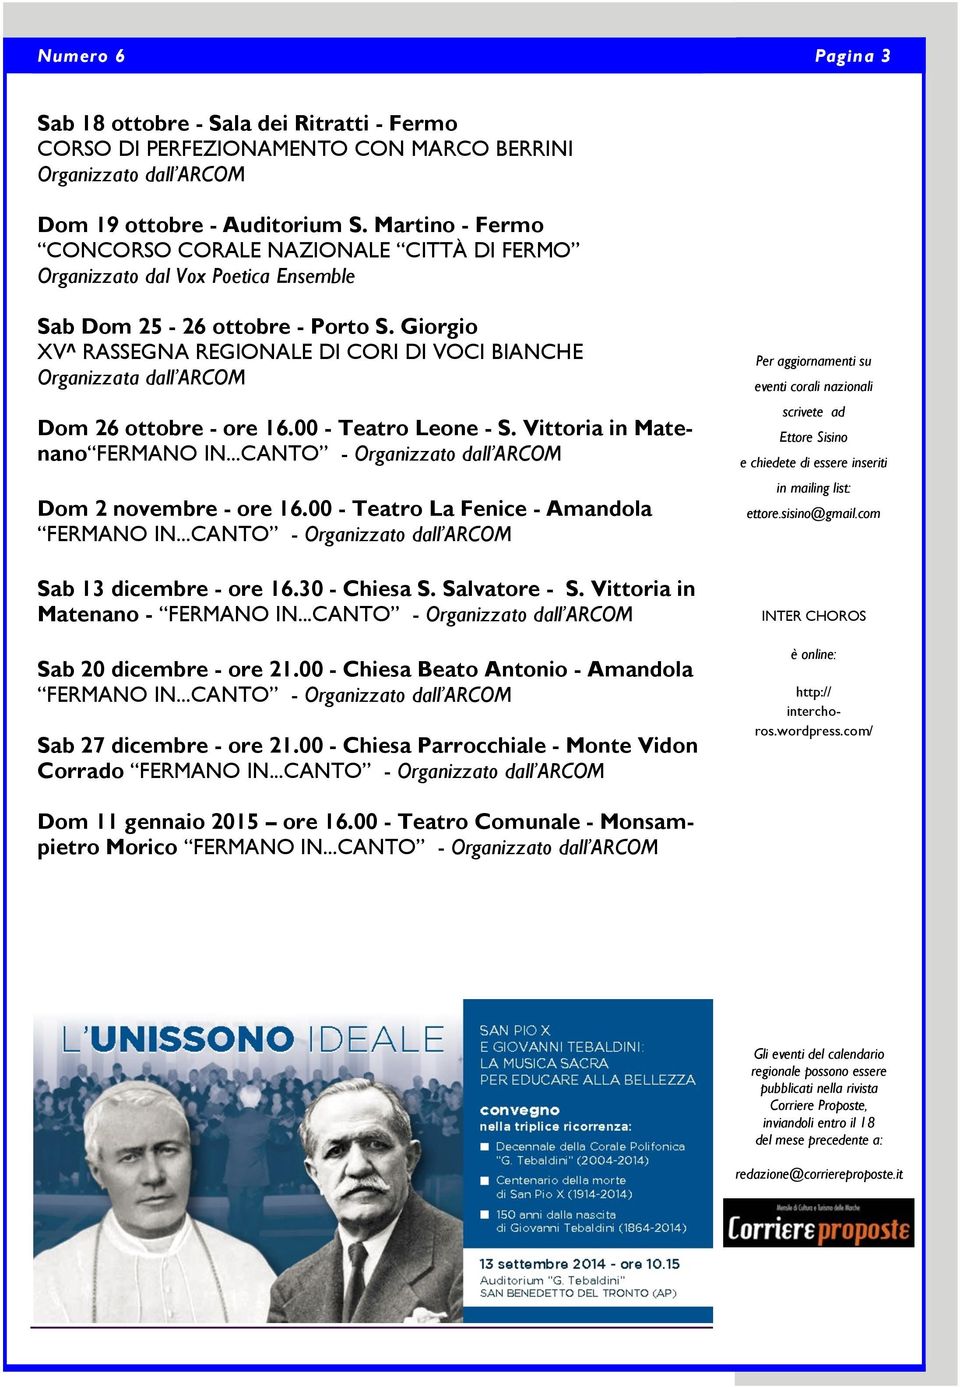 Giorgio XV^ RASSEGNA REGIONALE DI CORI DI VOCI BIANCHE Organizzata dall ARCOM Dom 26 ottobre - ore 16.00 - Teatro Leone - S. Vittoria in Matenano FERMANO IN.